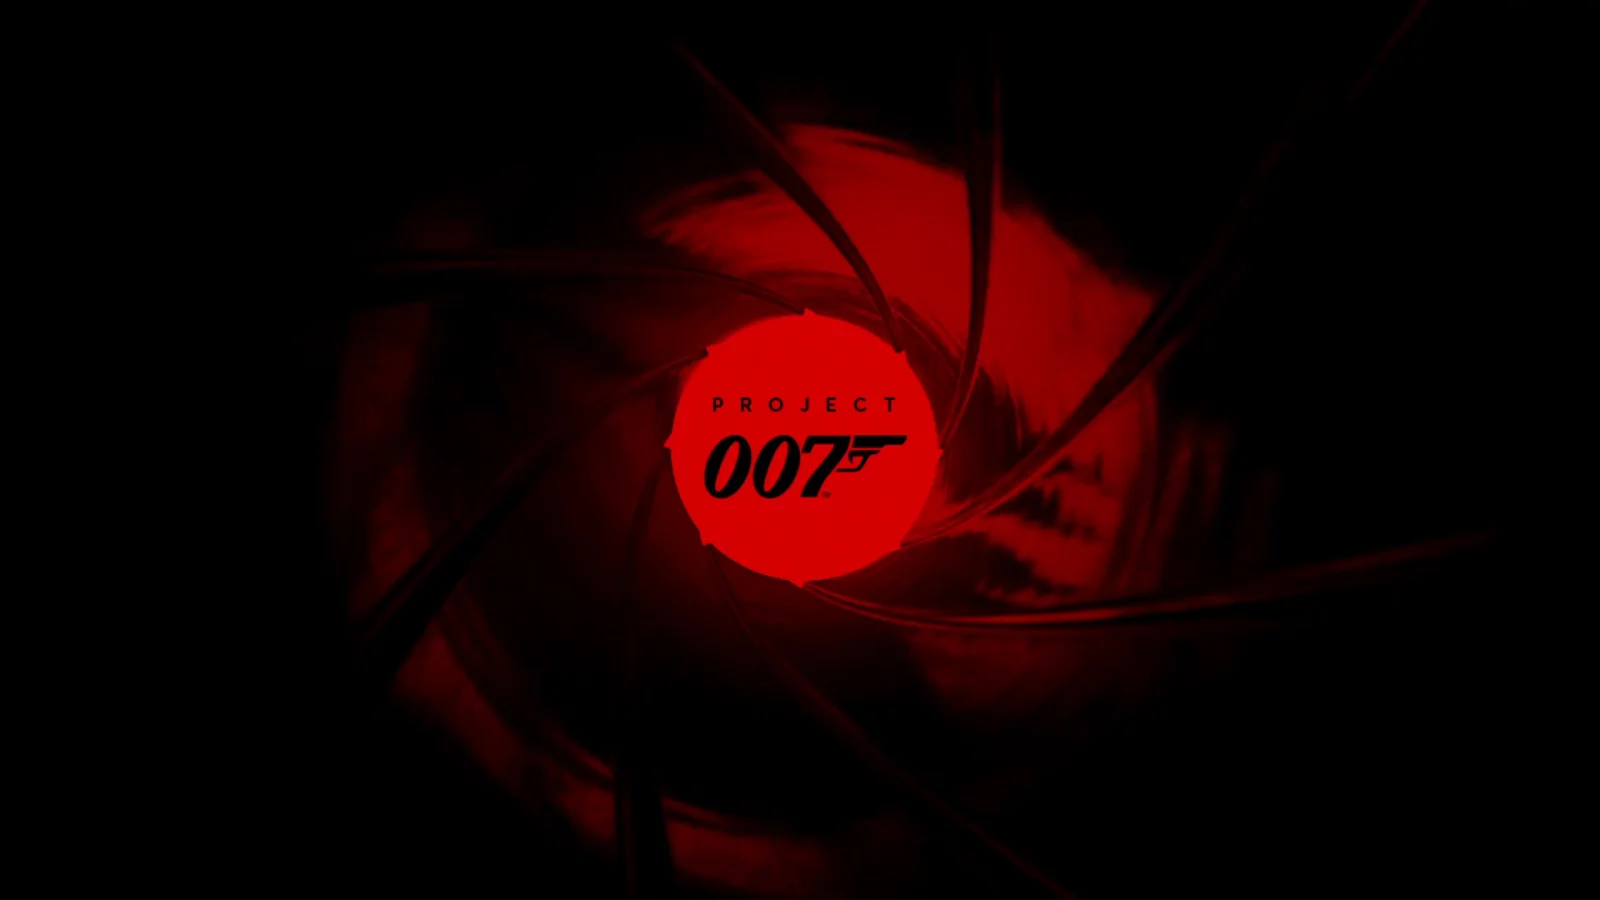 IO Interactive公布以“007”詹姆斯·邦德为主角的游戏新作